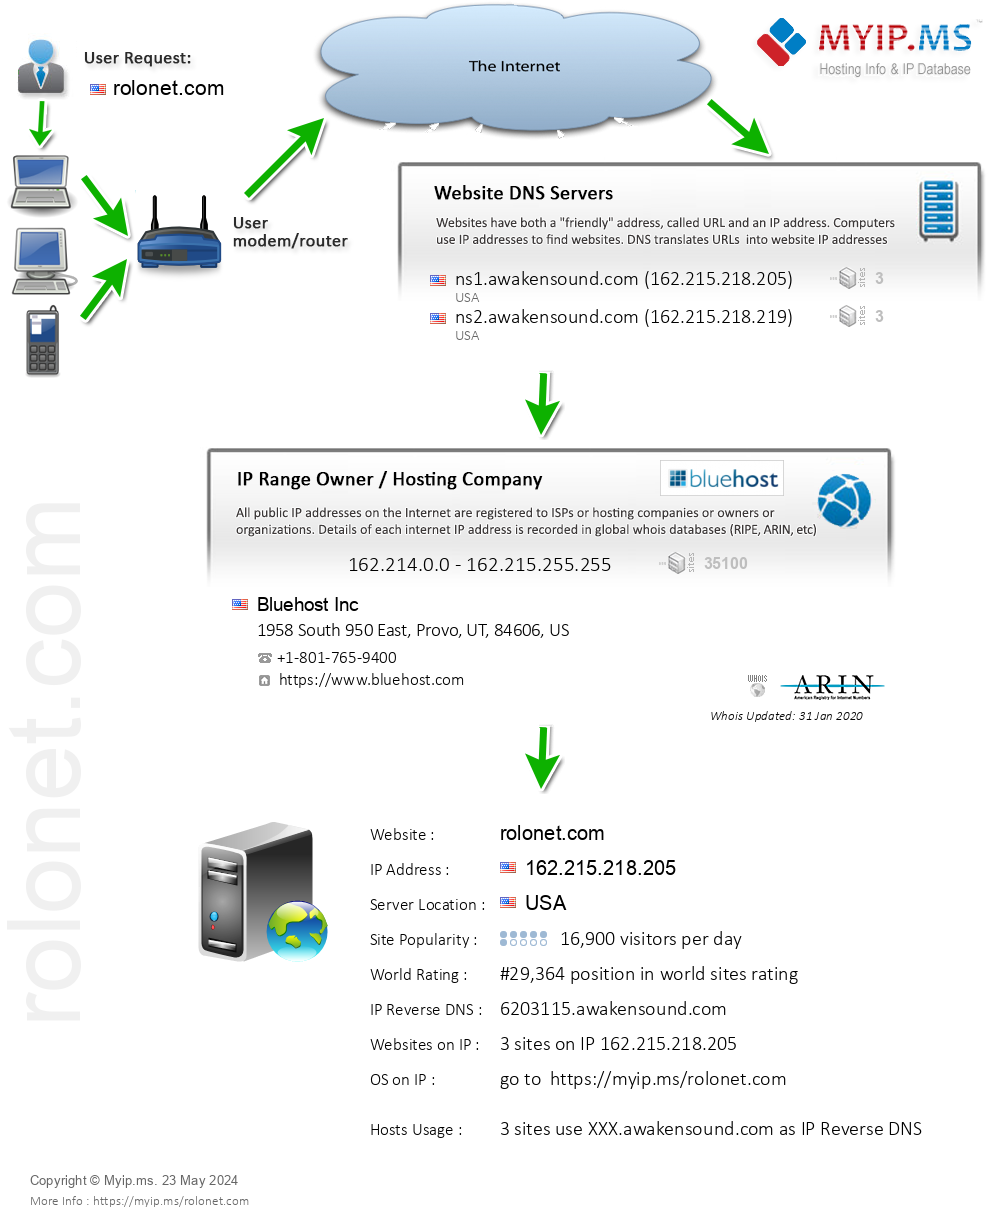 Rolonet.com - Website Hosting Visual IP Diagram